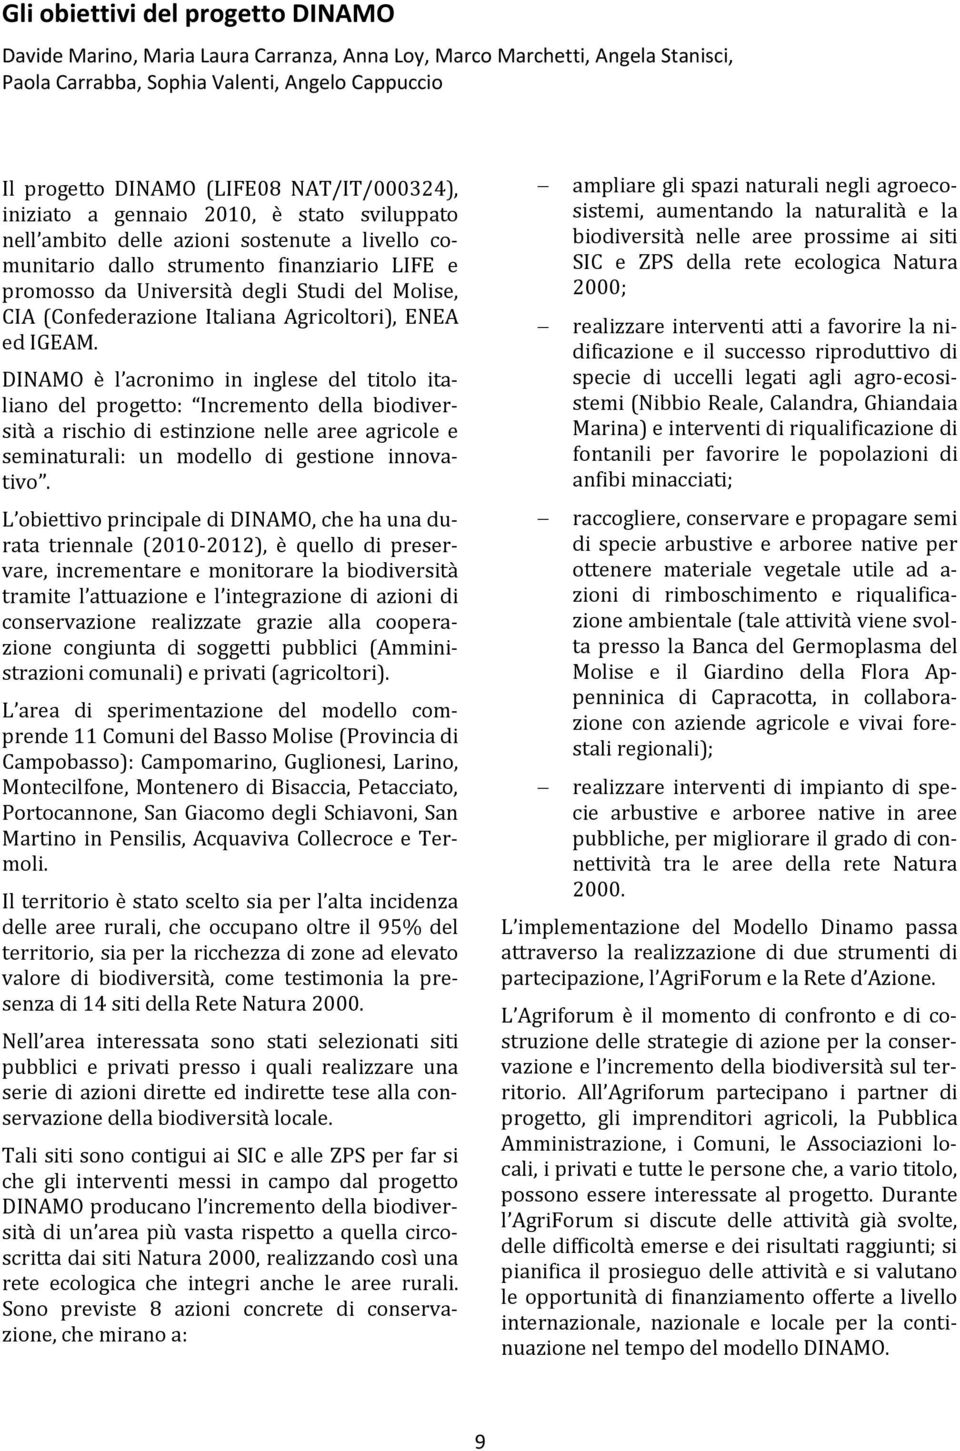 CIA (Confederazione Italiana Agricoltori), ENEA ed IGEAM.